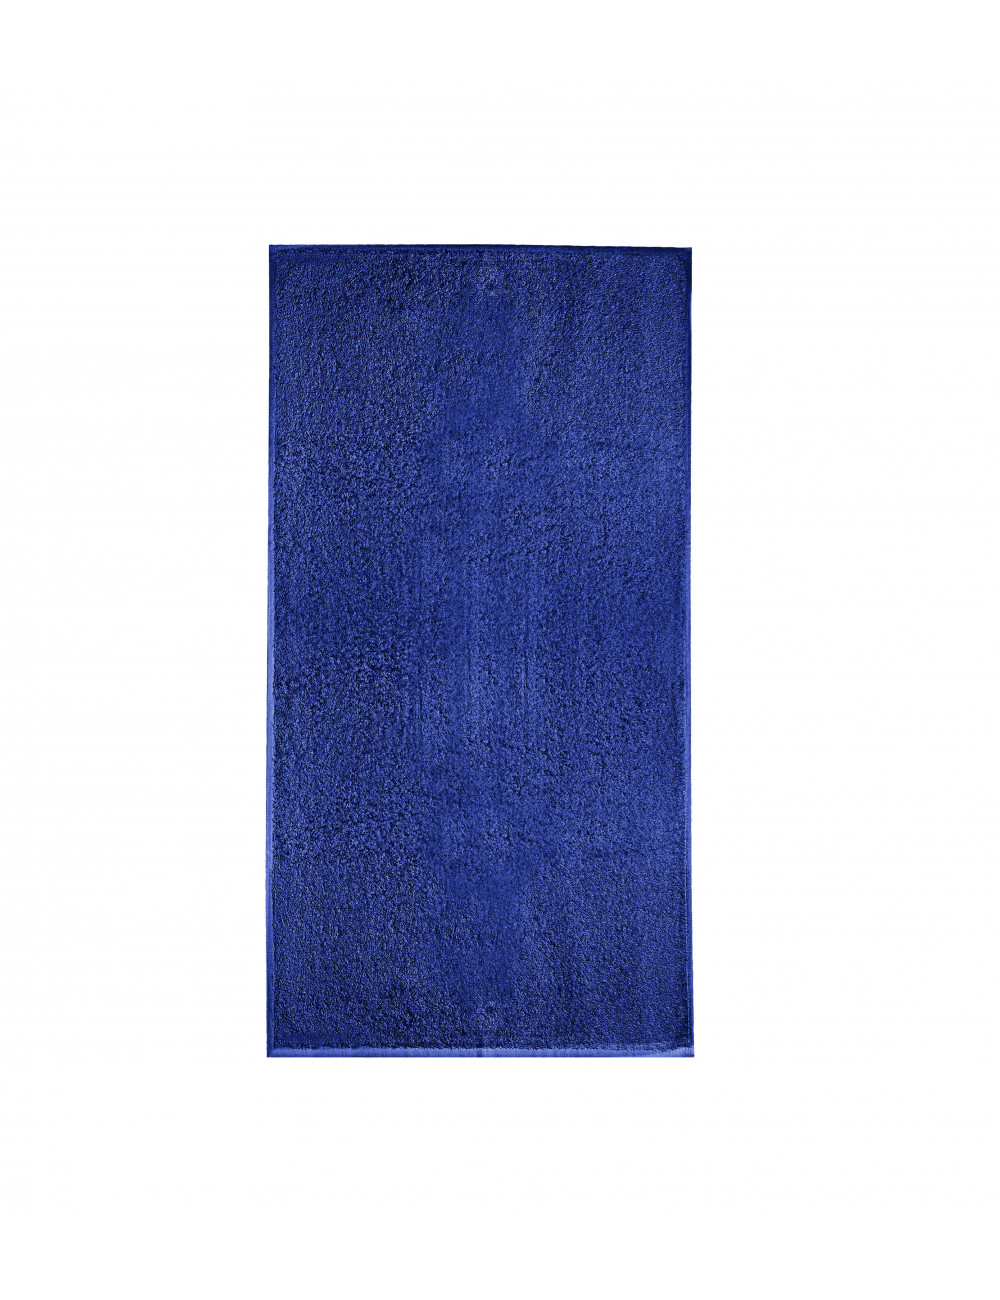 Unisex towel terry towel 908 cornflower blue Adler Malfini